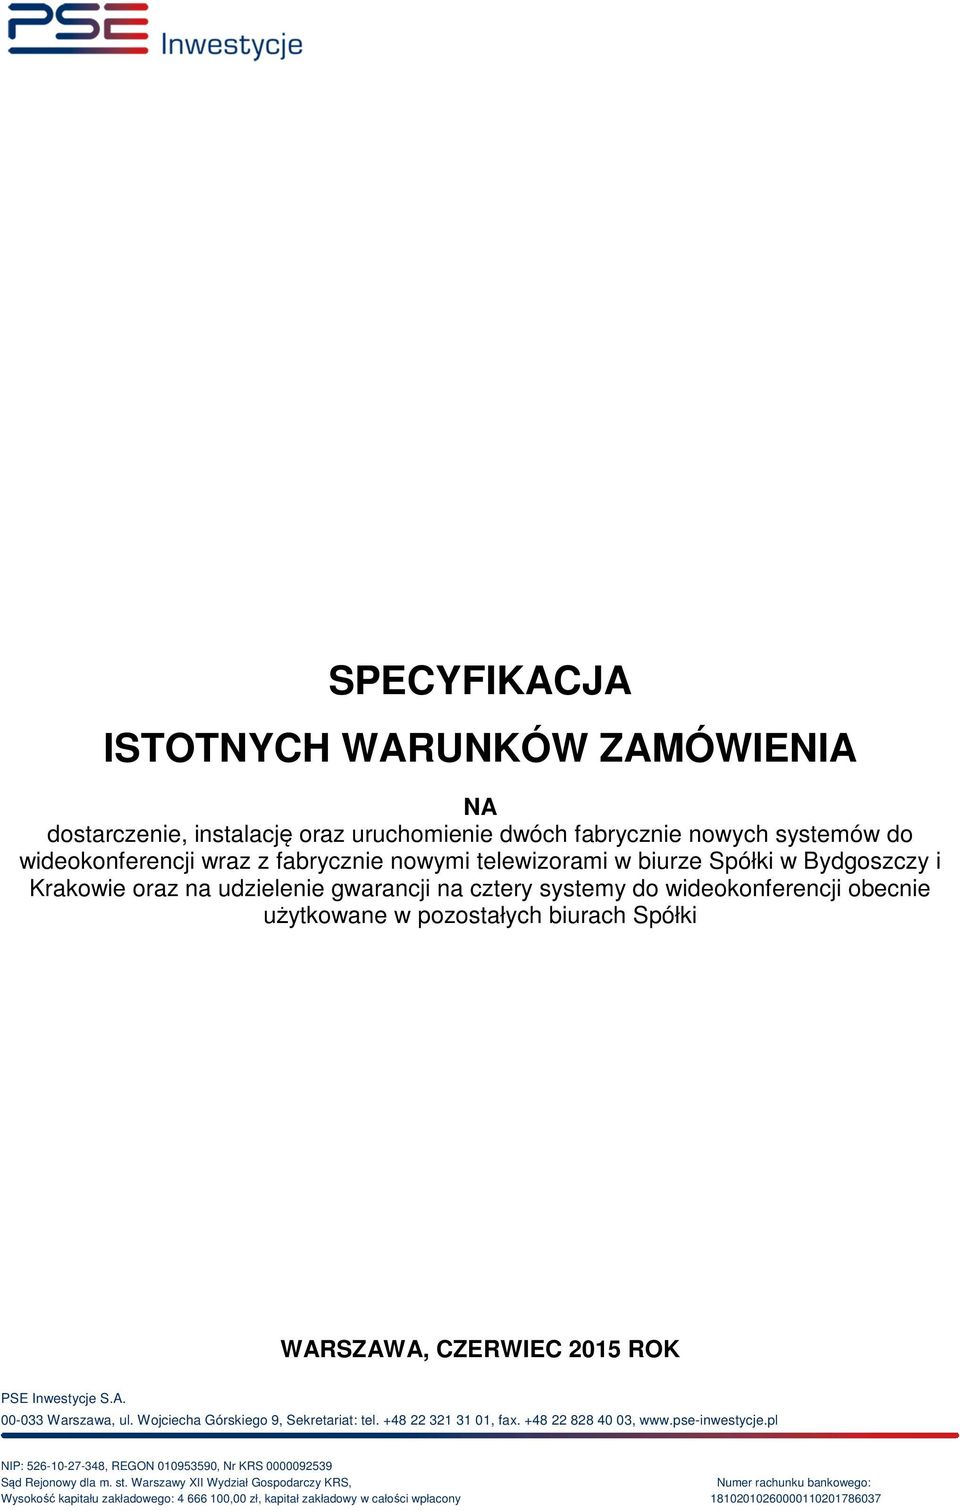 A. 00-033 Warszawa, ul. Wojciecha Górskiego 9, Sekretariat: tel. +48 22 321 31 01, fax. +48 22 828 40 03, www.pse-inwestycje.